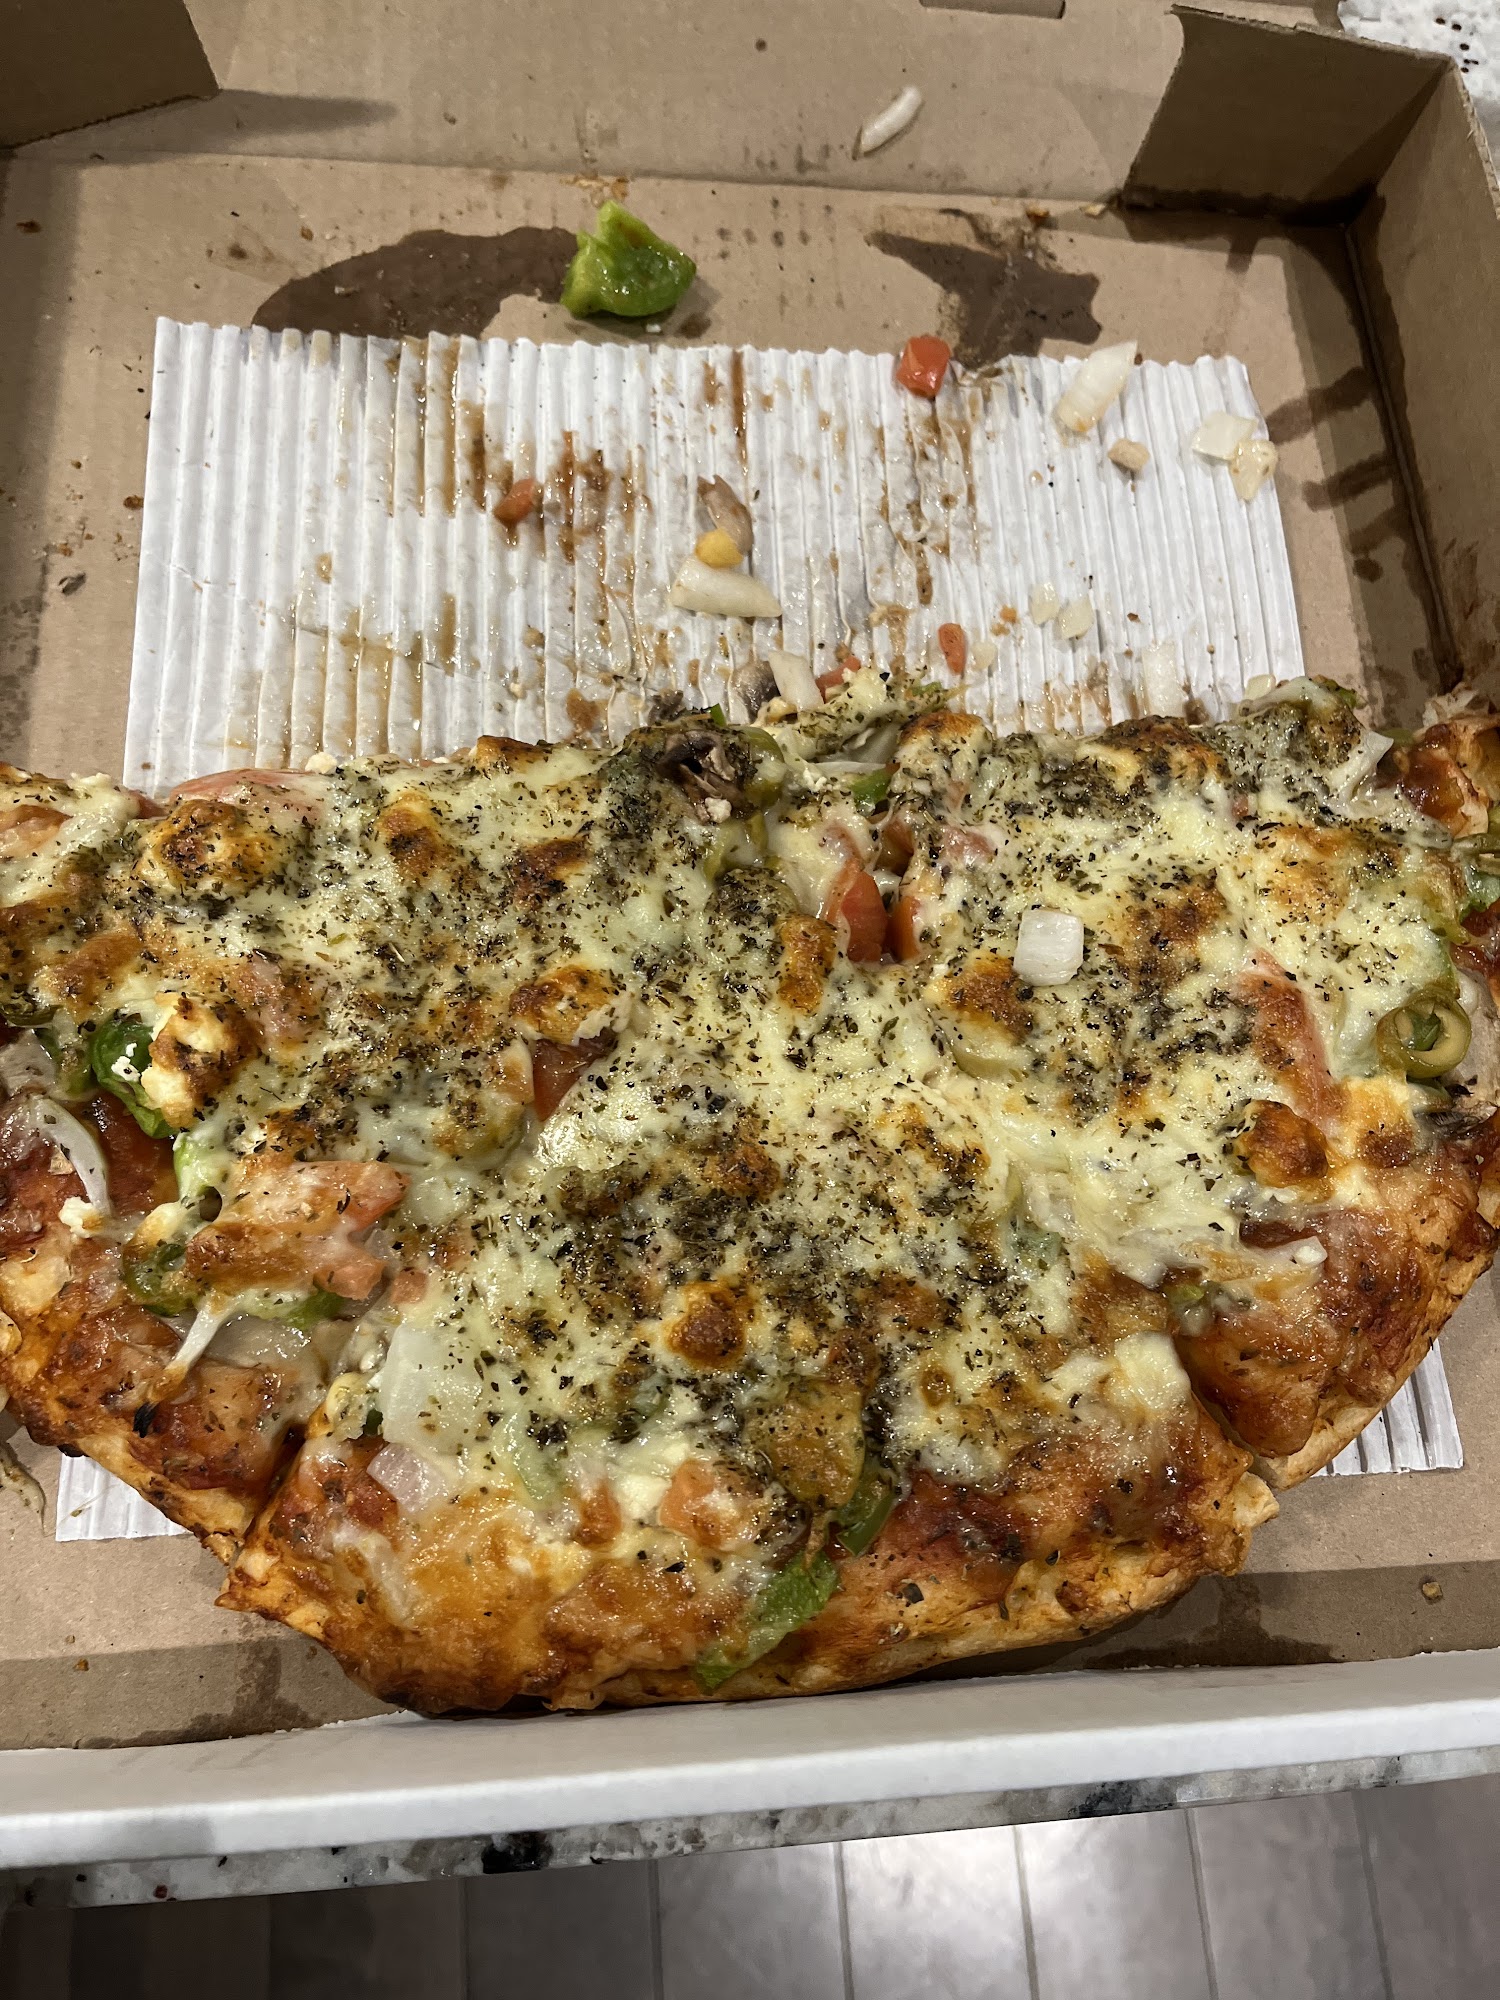 Merivale Pizza